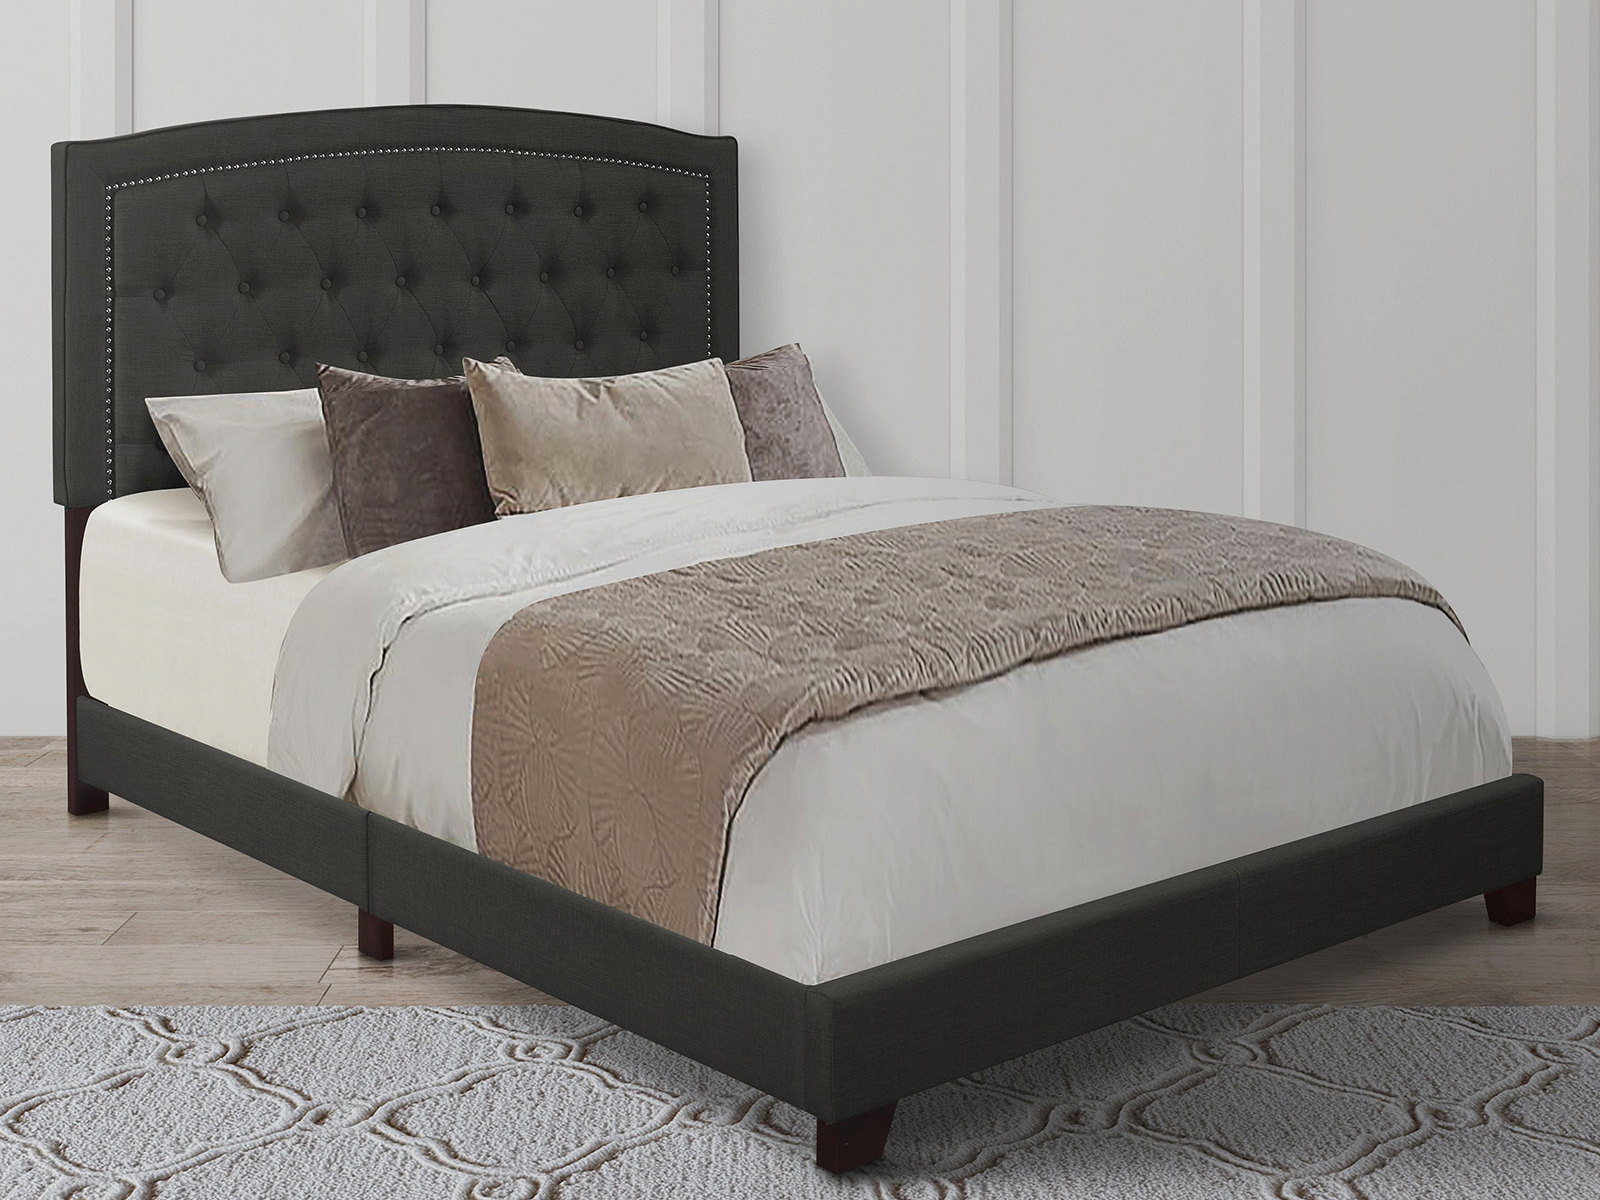 Homelegance Upholstered Bed Set | King | Linden Bed Frame & Headboard | Dark Gray